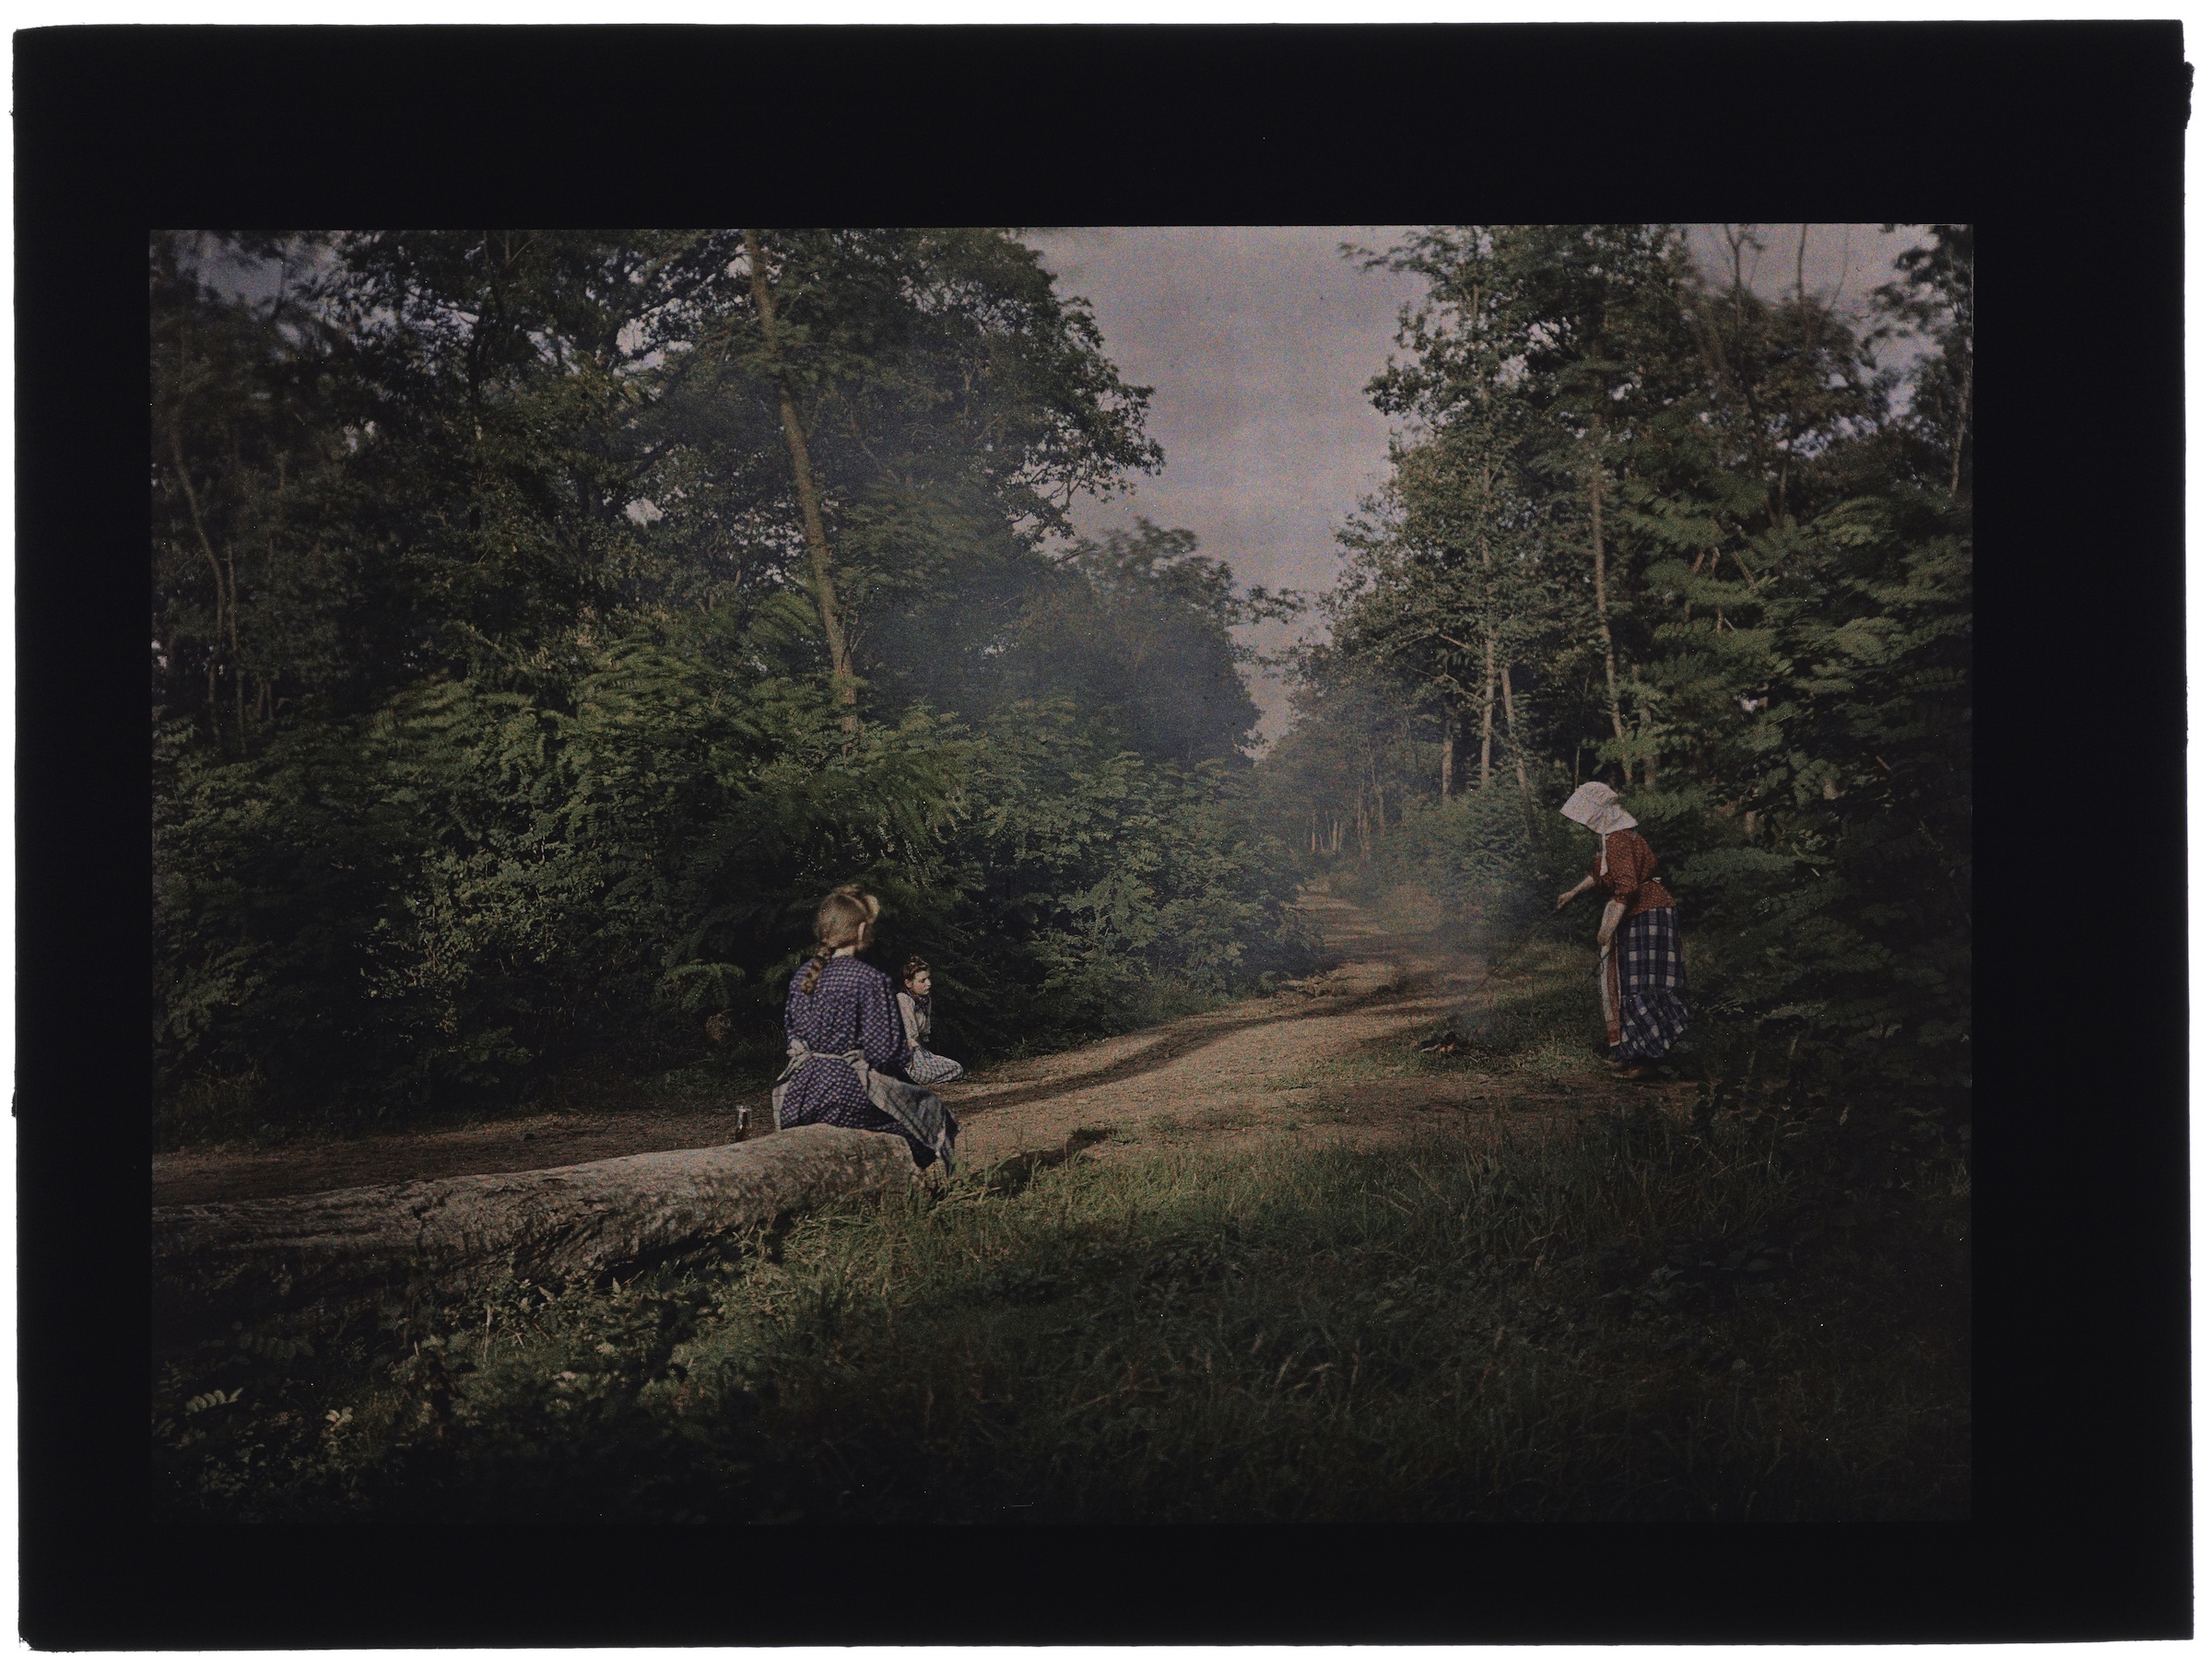 Deux ou trois femmes paysannes en forêt, pique-nique sur un tronc d'arbre